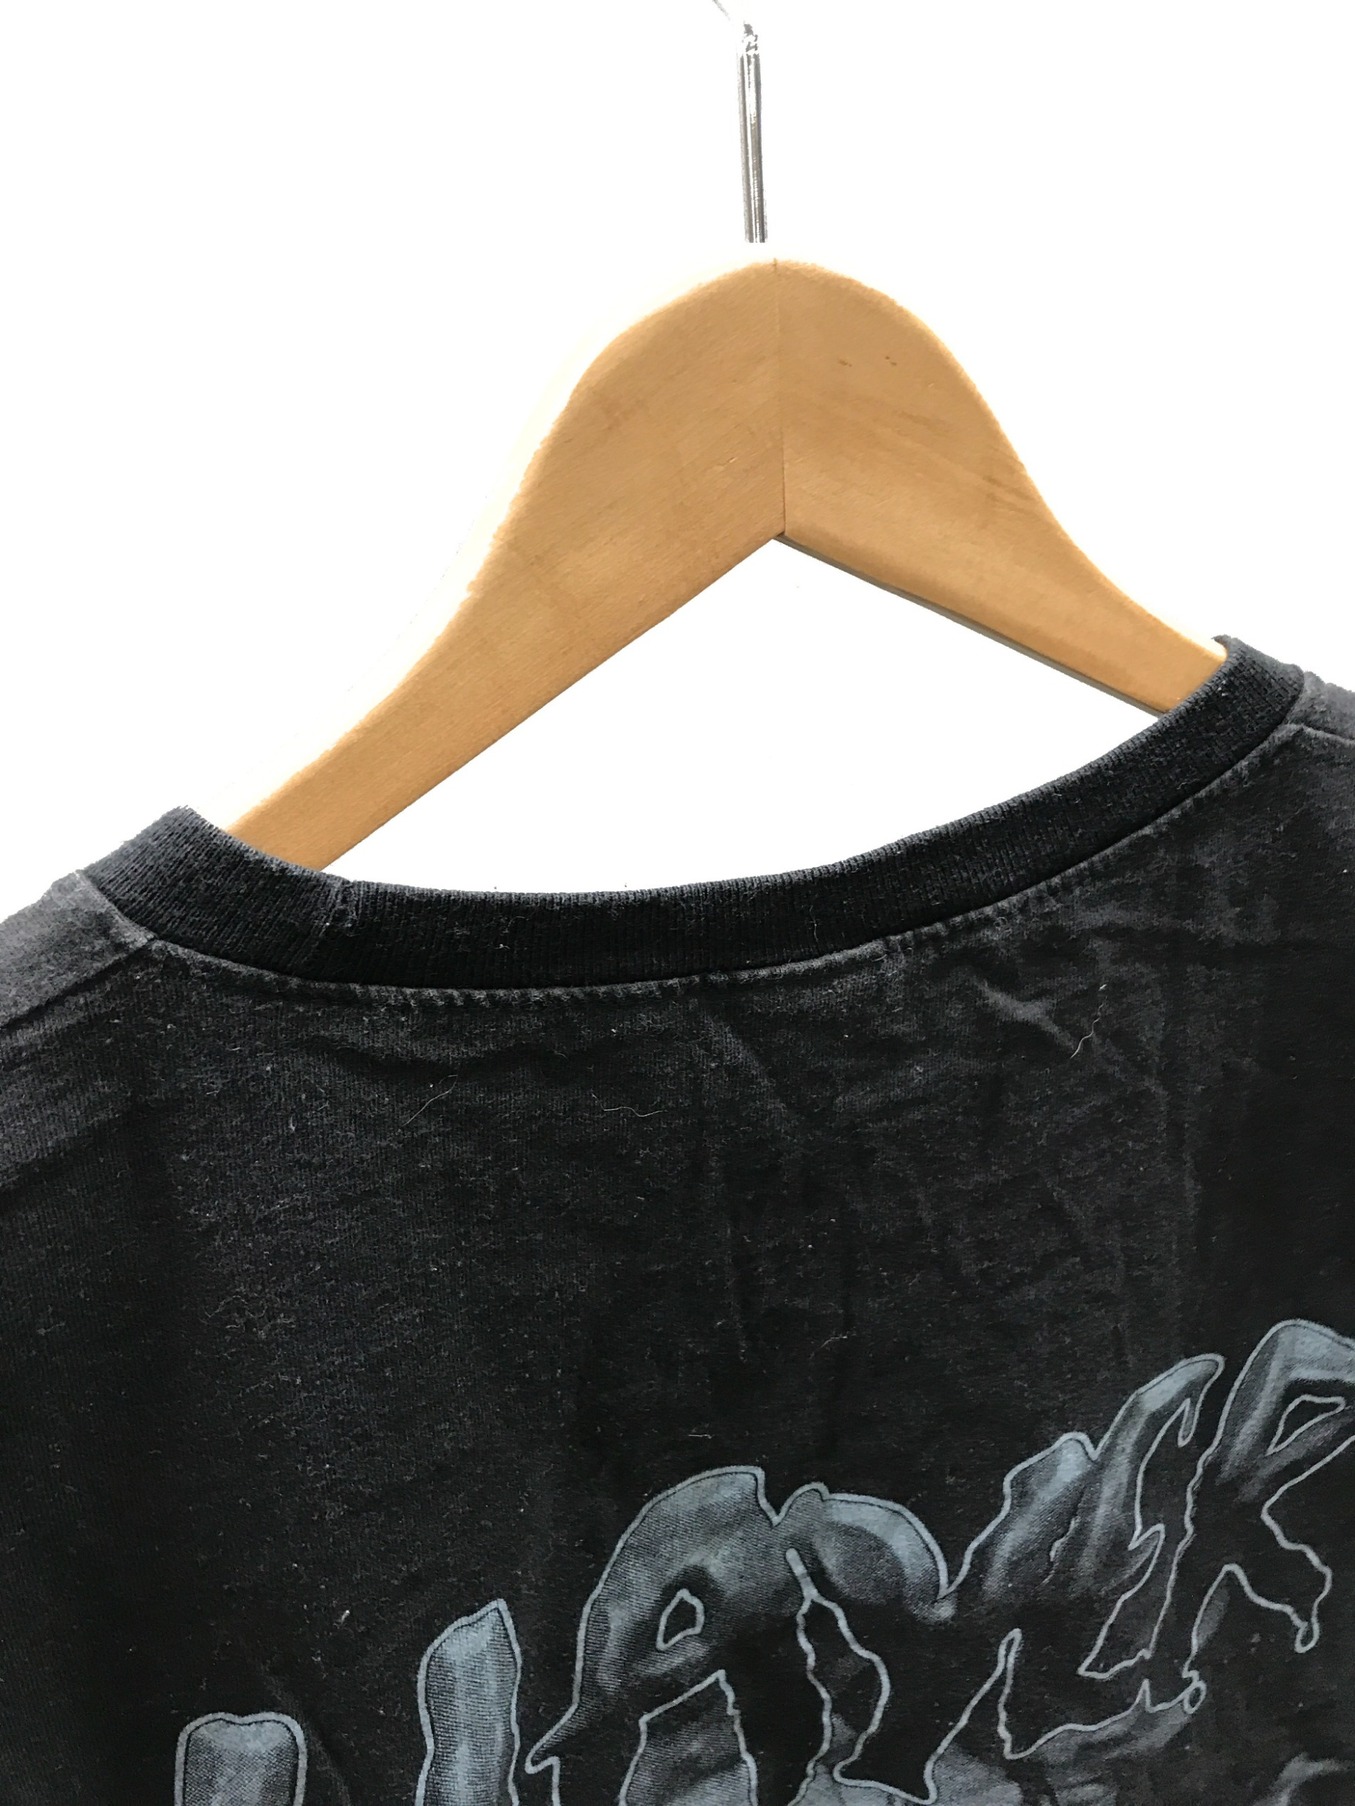 SLAYER (スレイヤー) ヴィンテージバンドTシャツ ブラック サイズ:XL